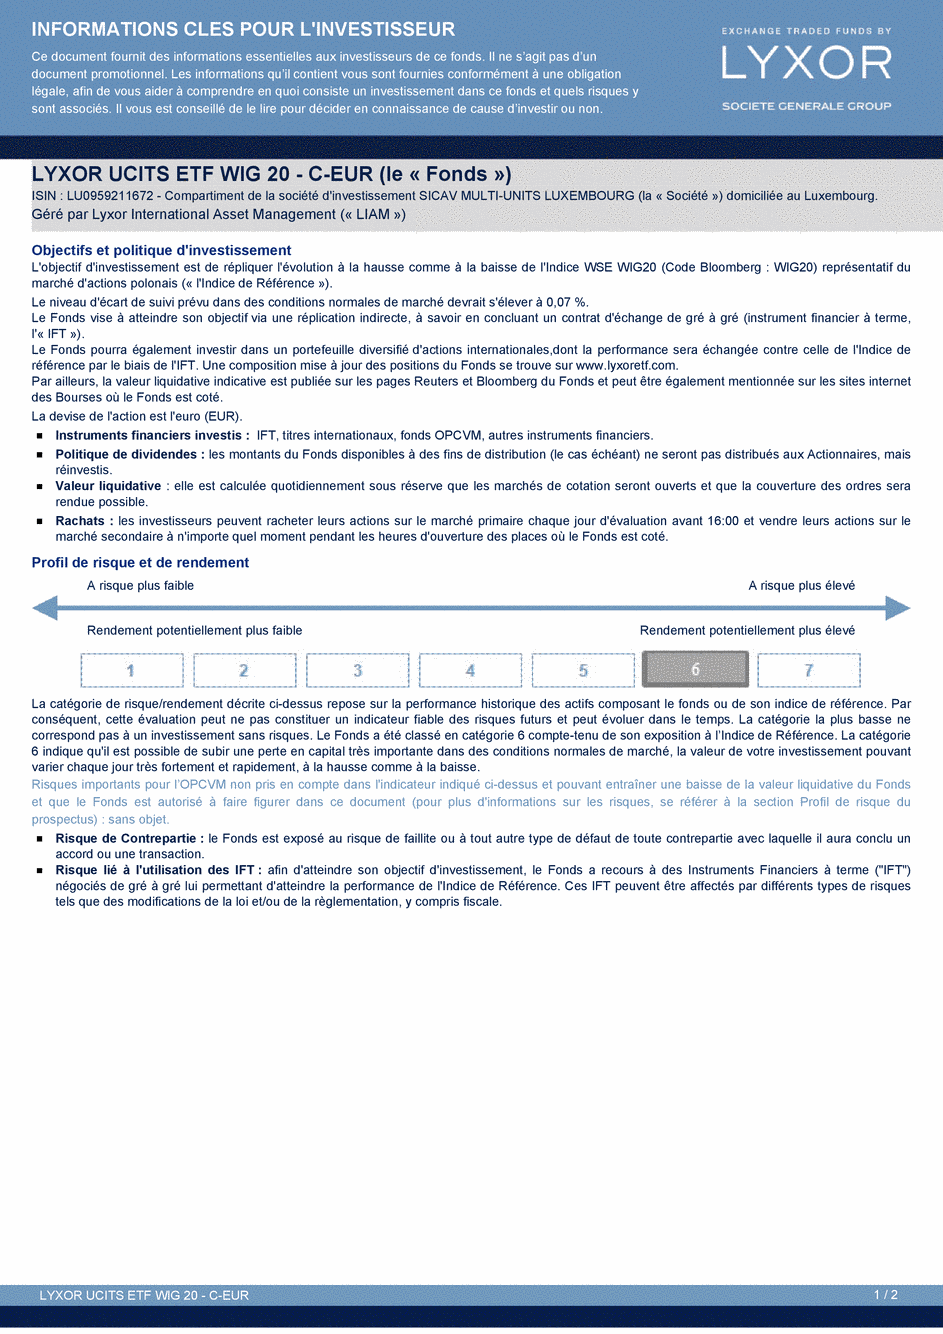 DICI Lyxor WIG 20 UCITS ETF - C-EUR - 26/03/2015 - Français